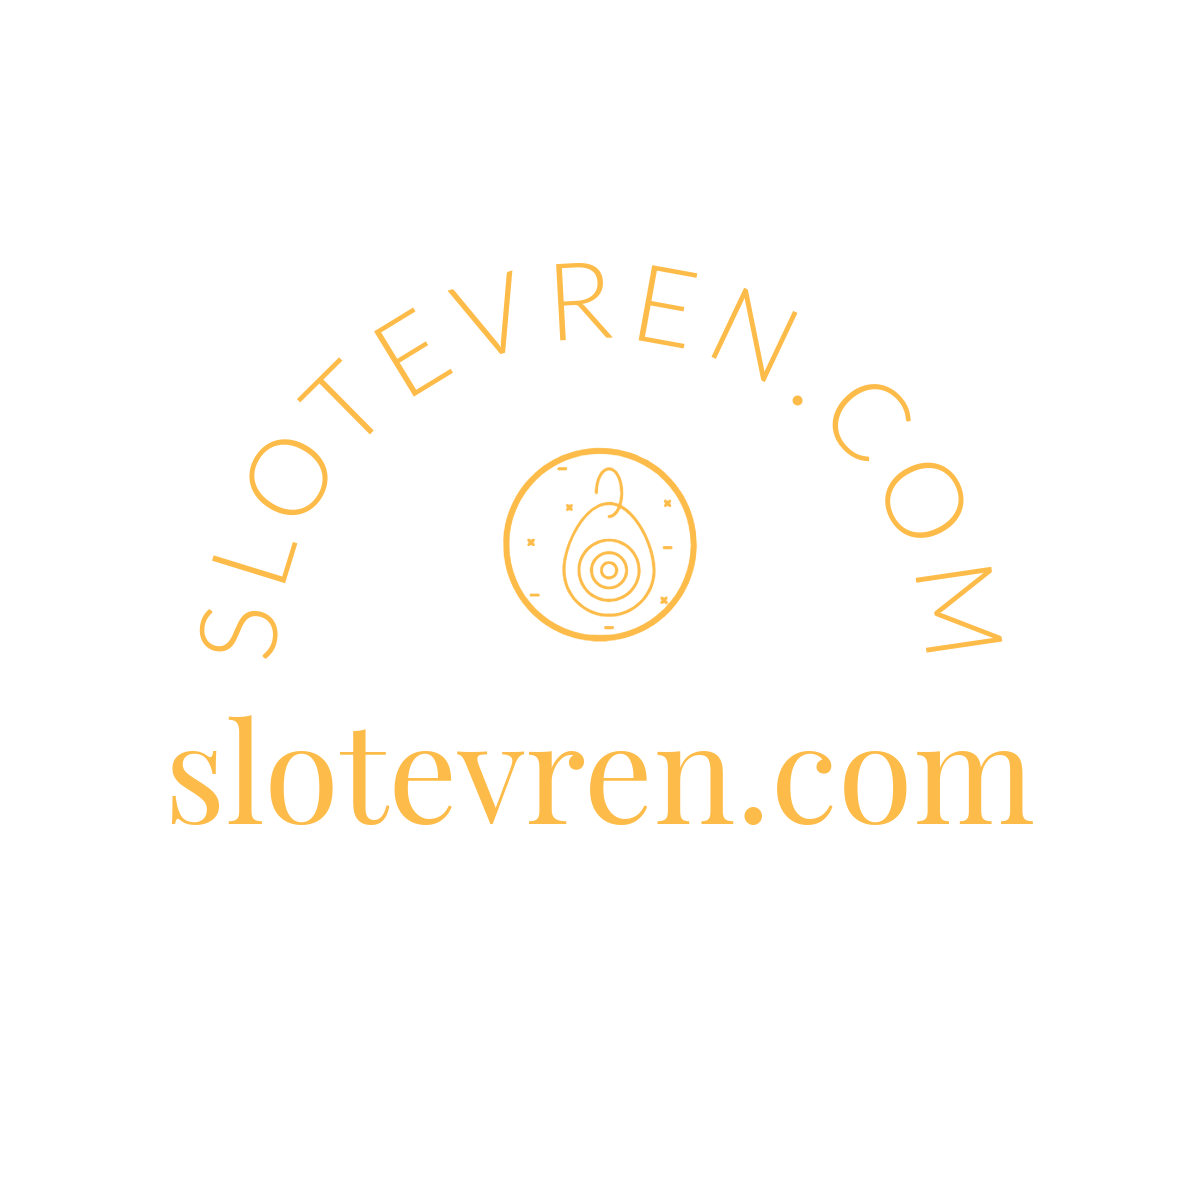 slotevren.com